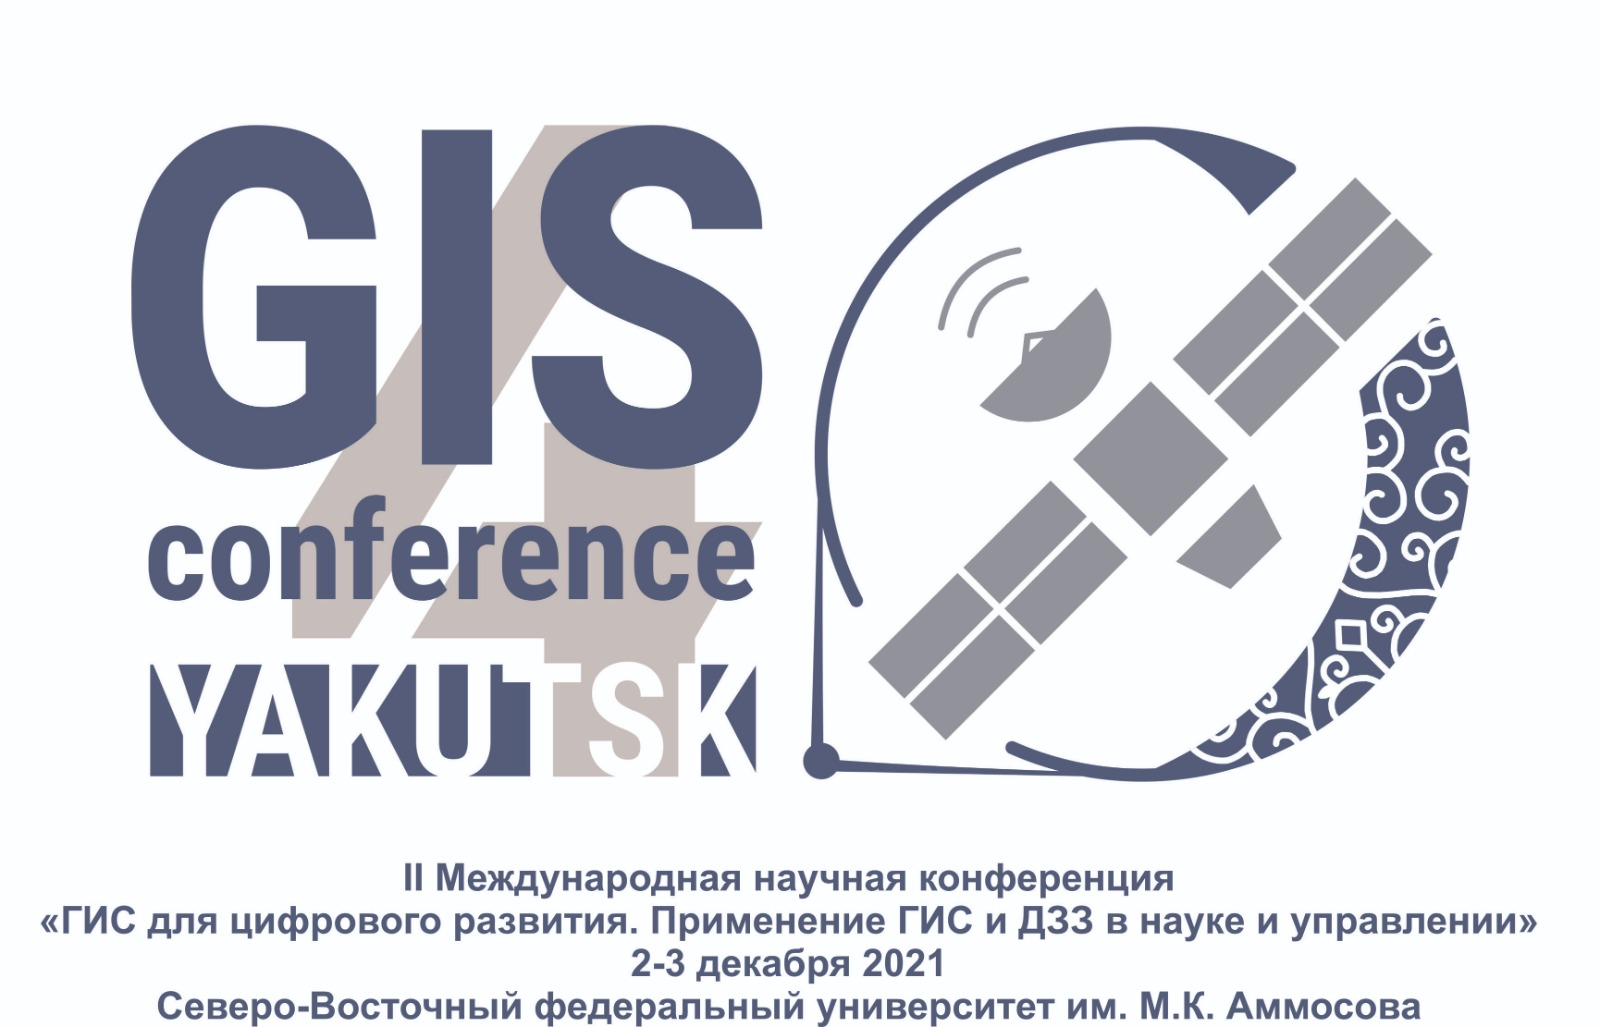 II Международная конференция "ГИС для цифрового развития. Применение ГИС и ДЗЗ в науке и управлении"